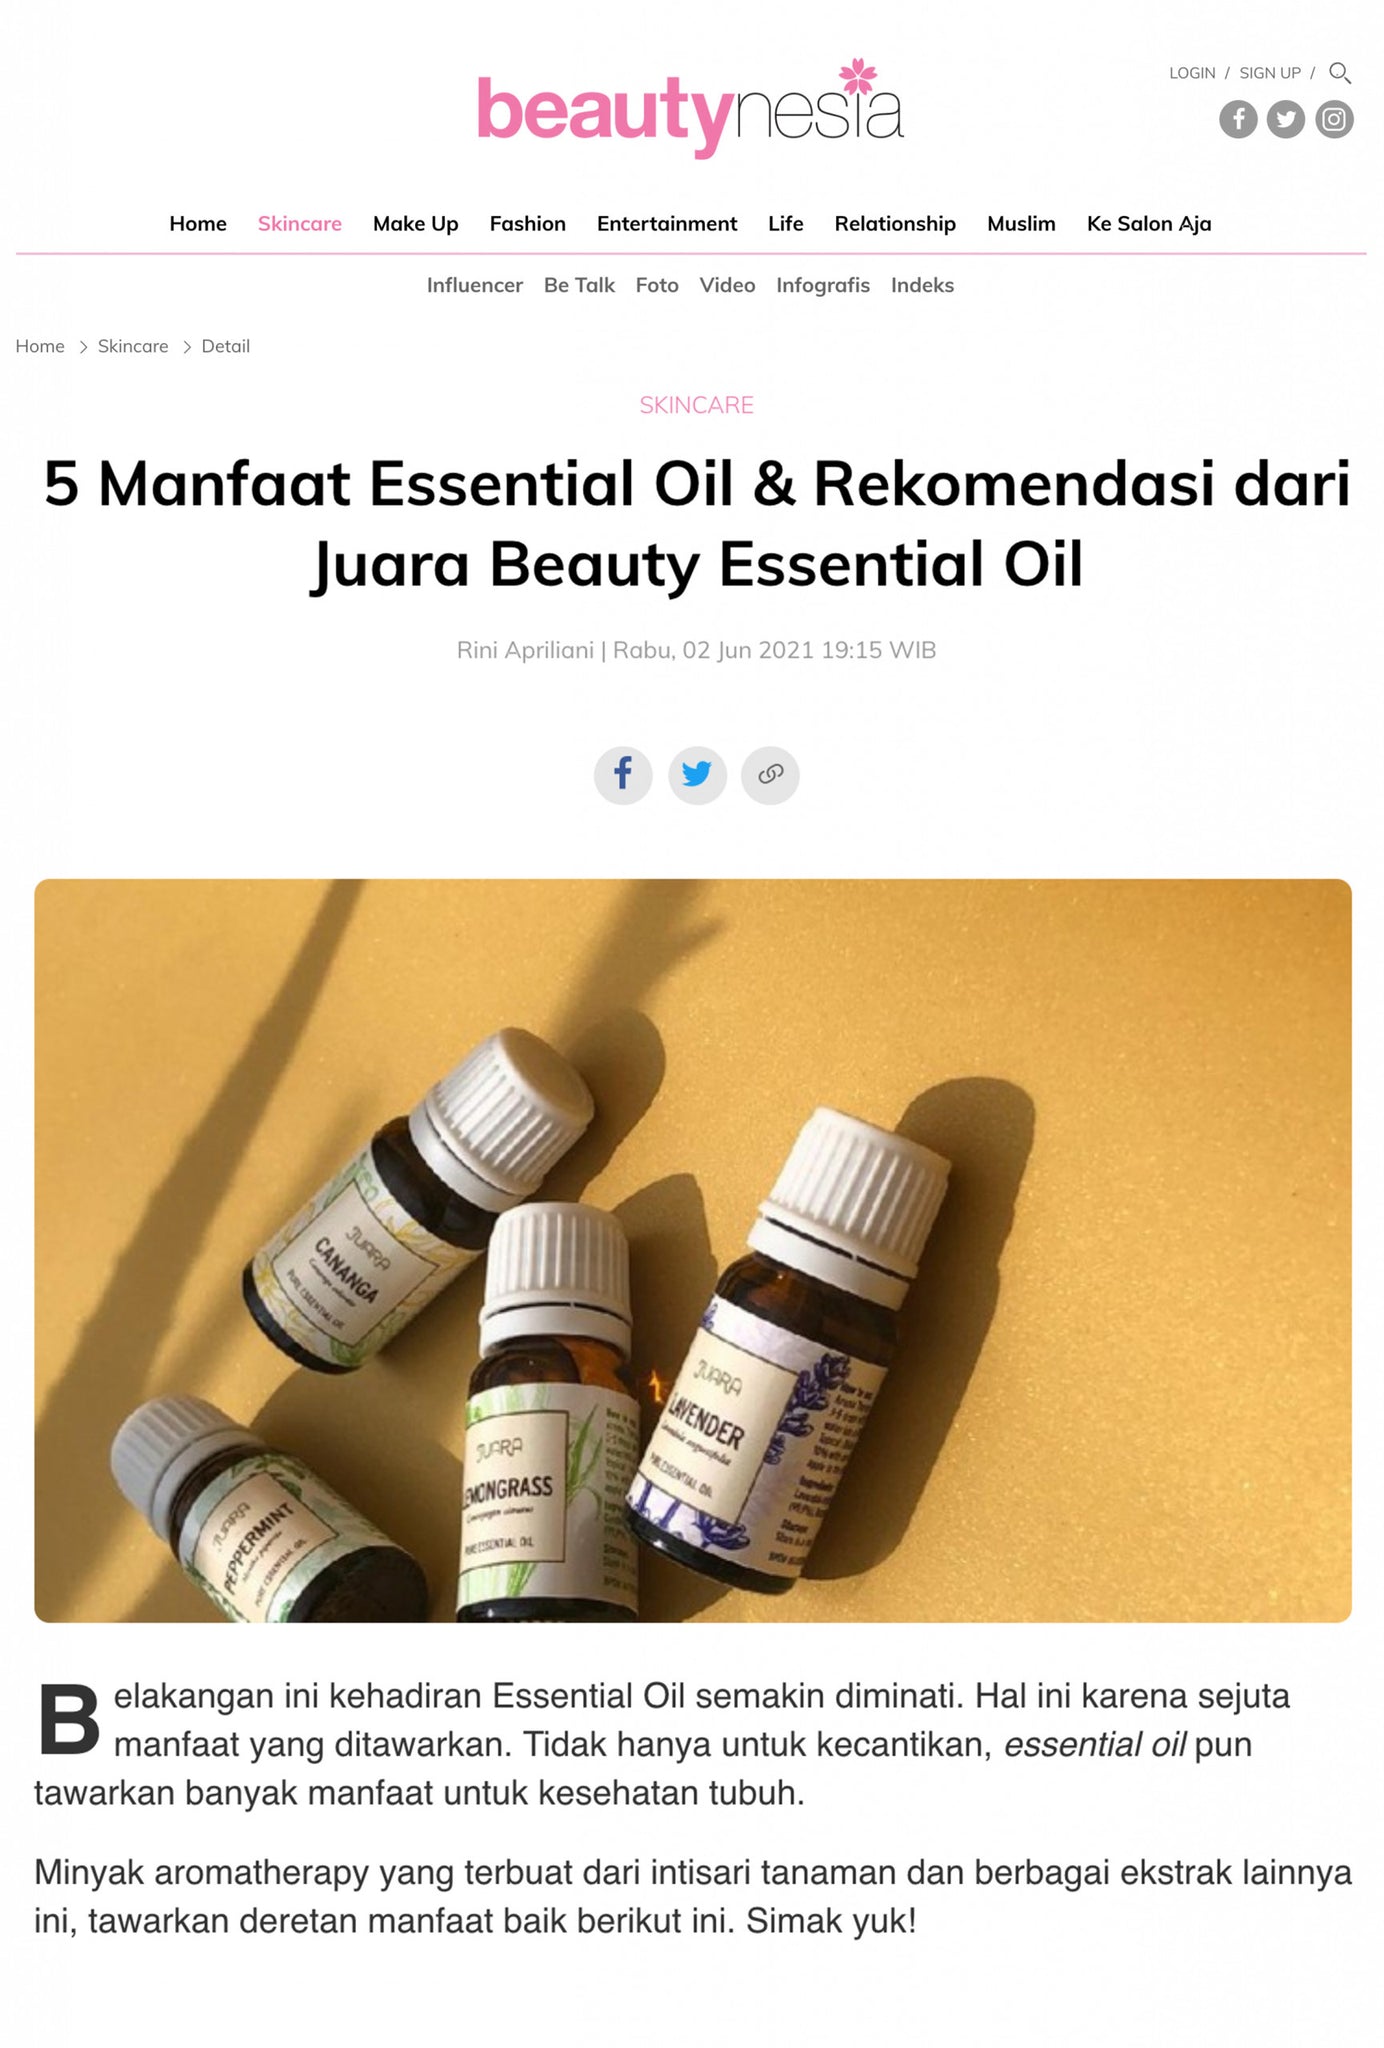 5 Manfaat Essential Oil & Rekomendasi dari Juara Beauty Essential Oil